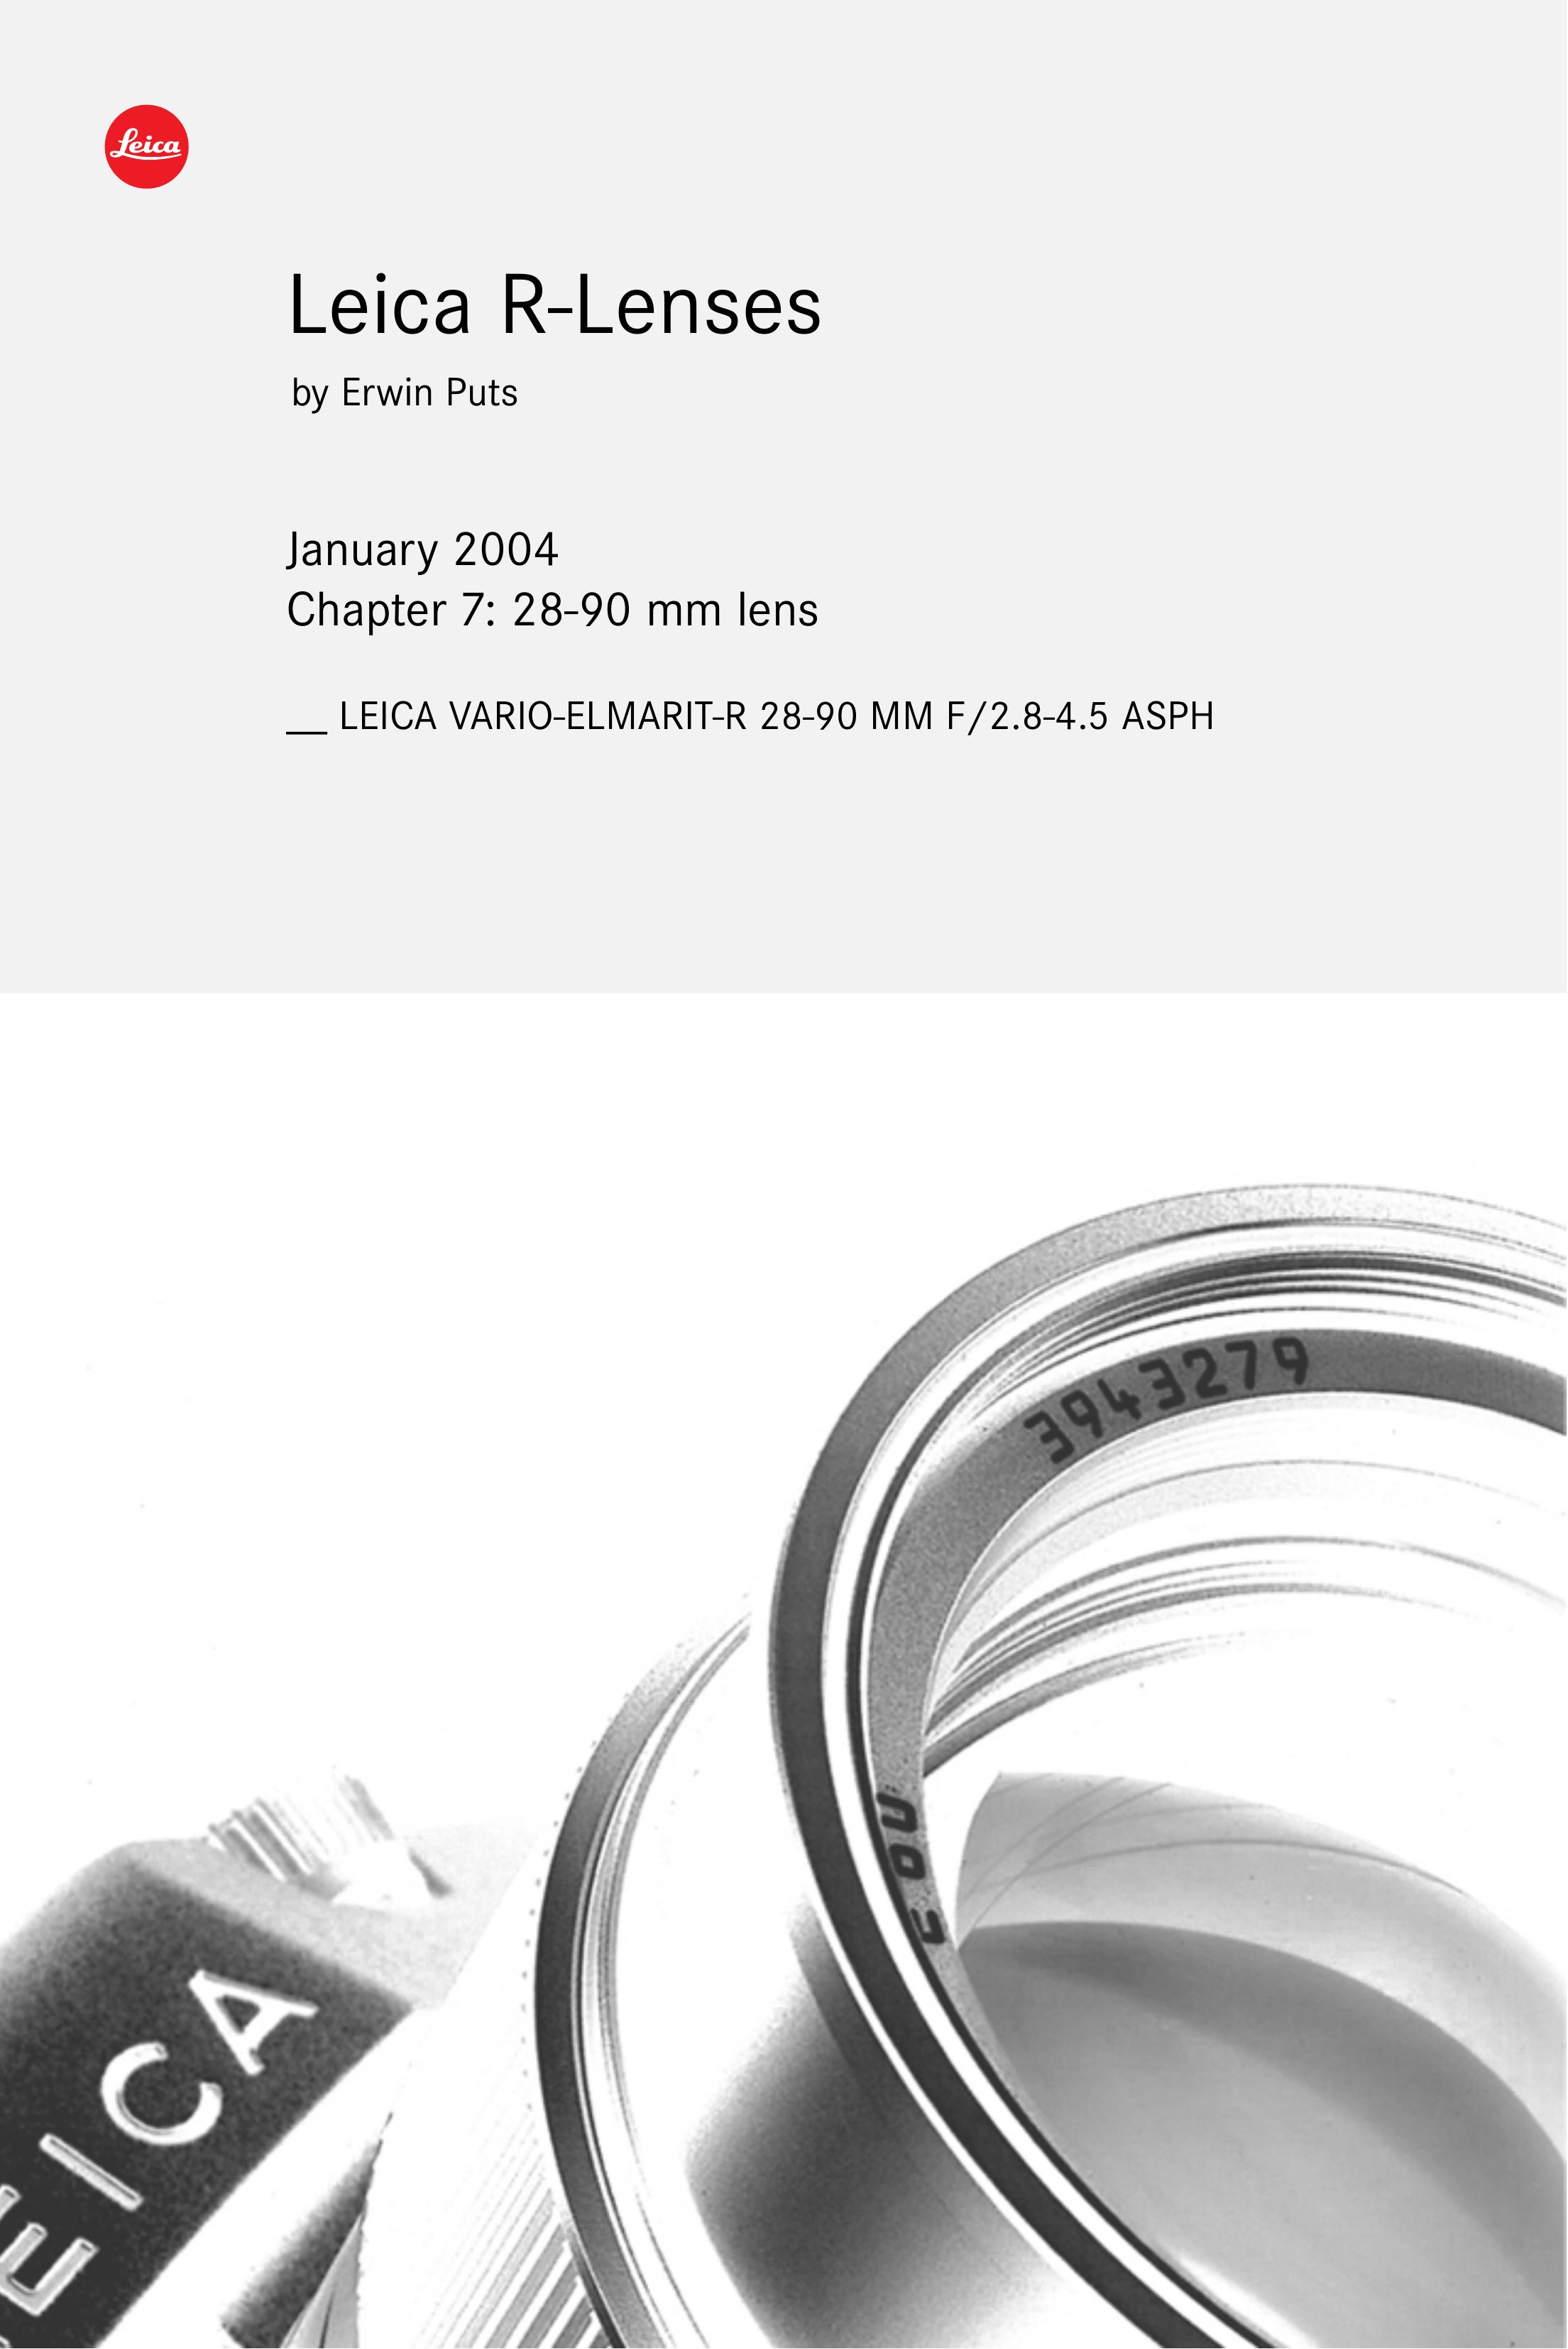 Leica R-Lenses Digital Camera User Manual